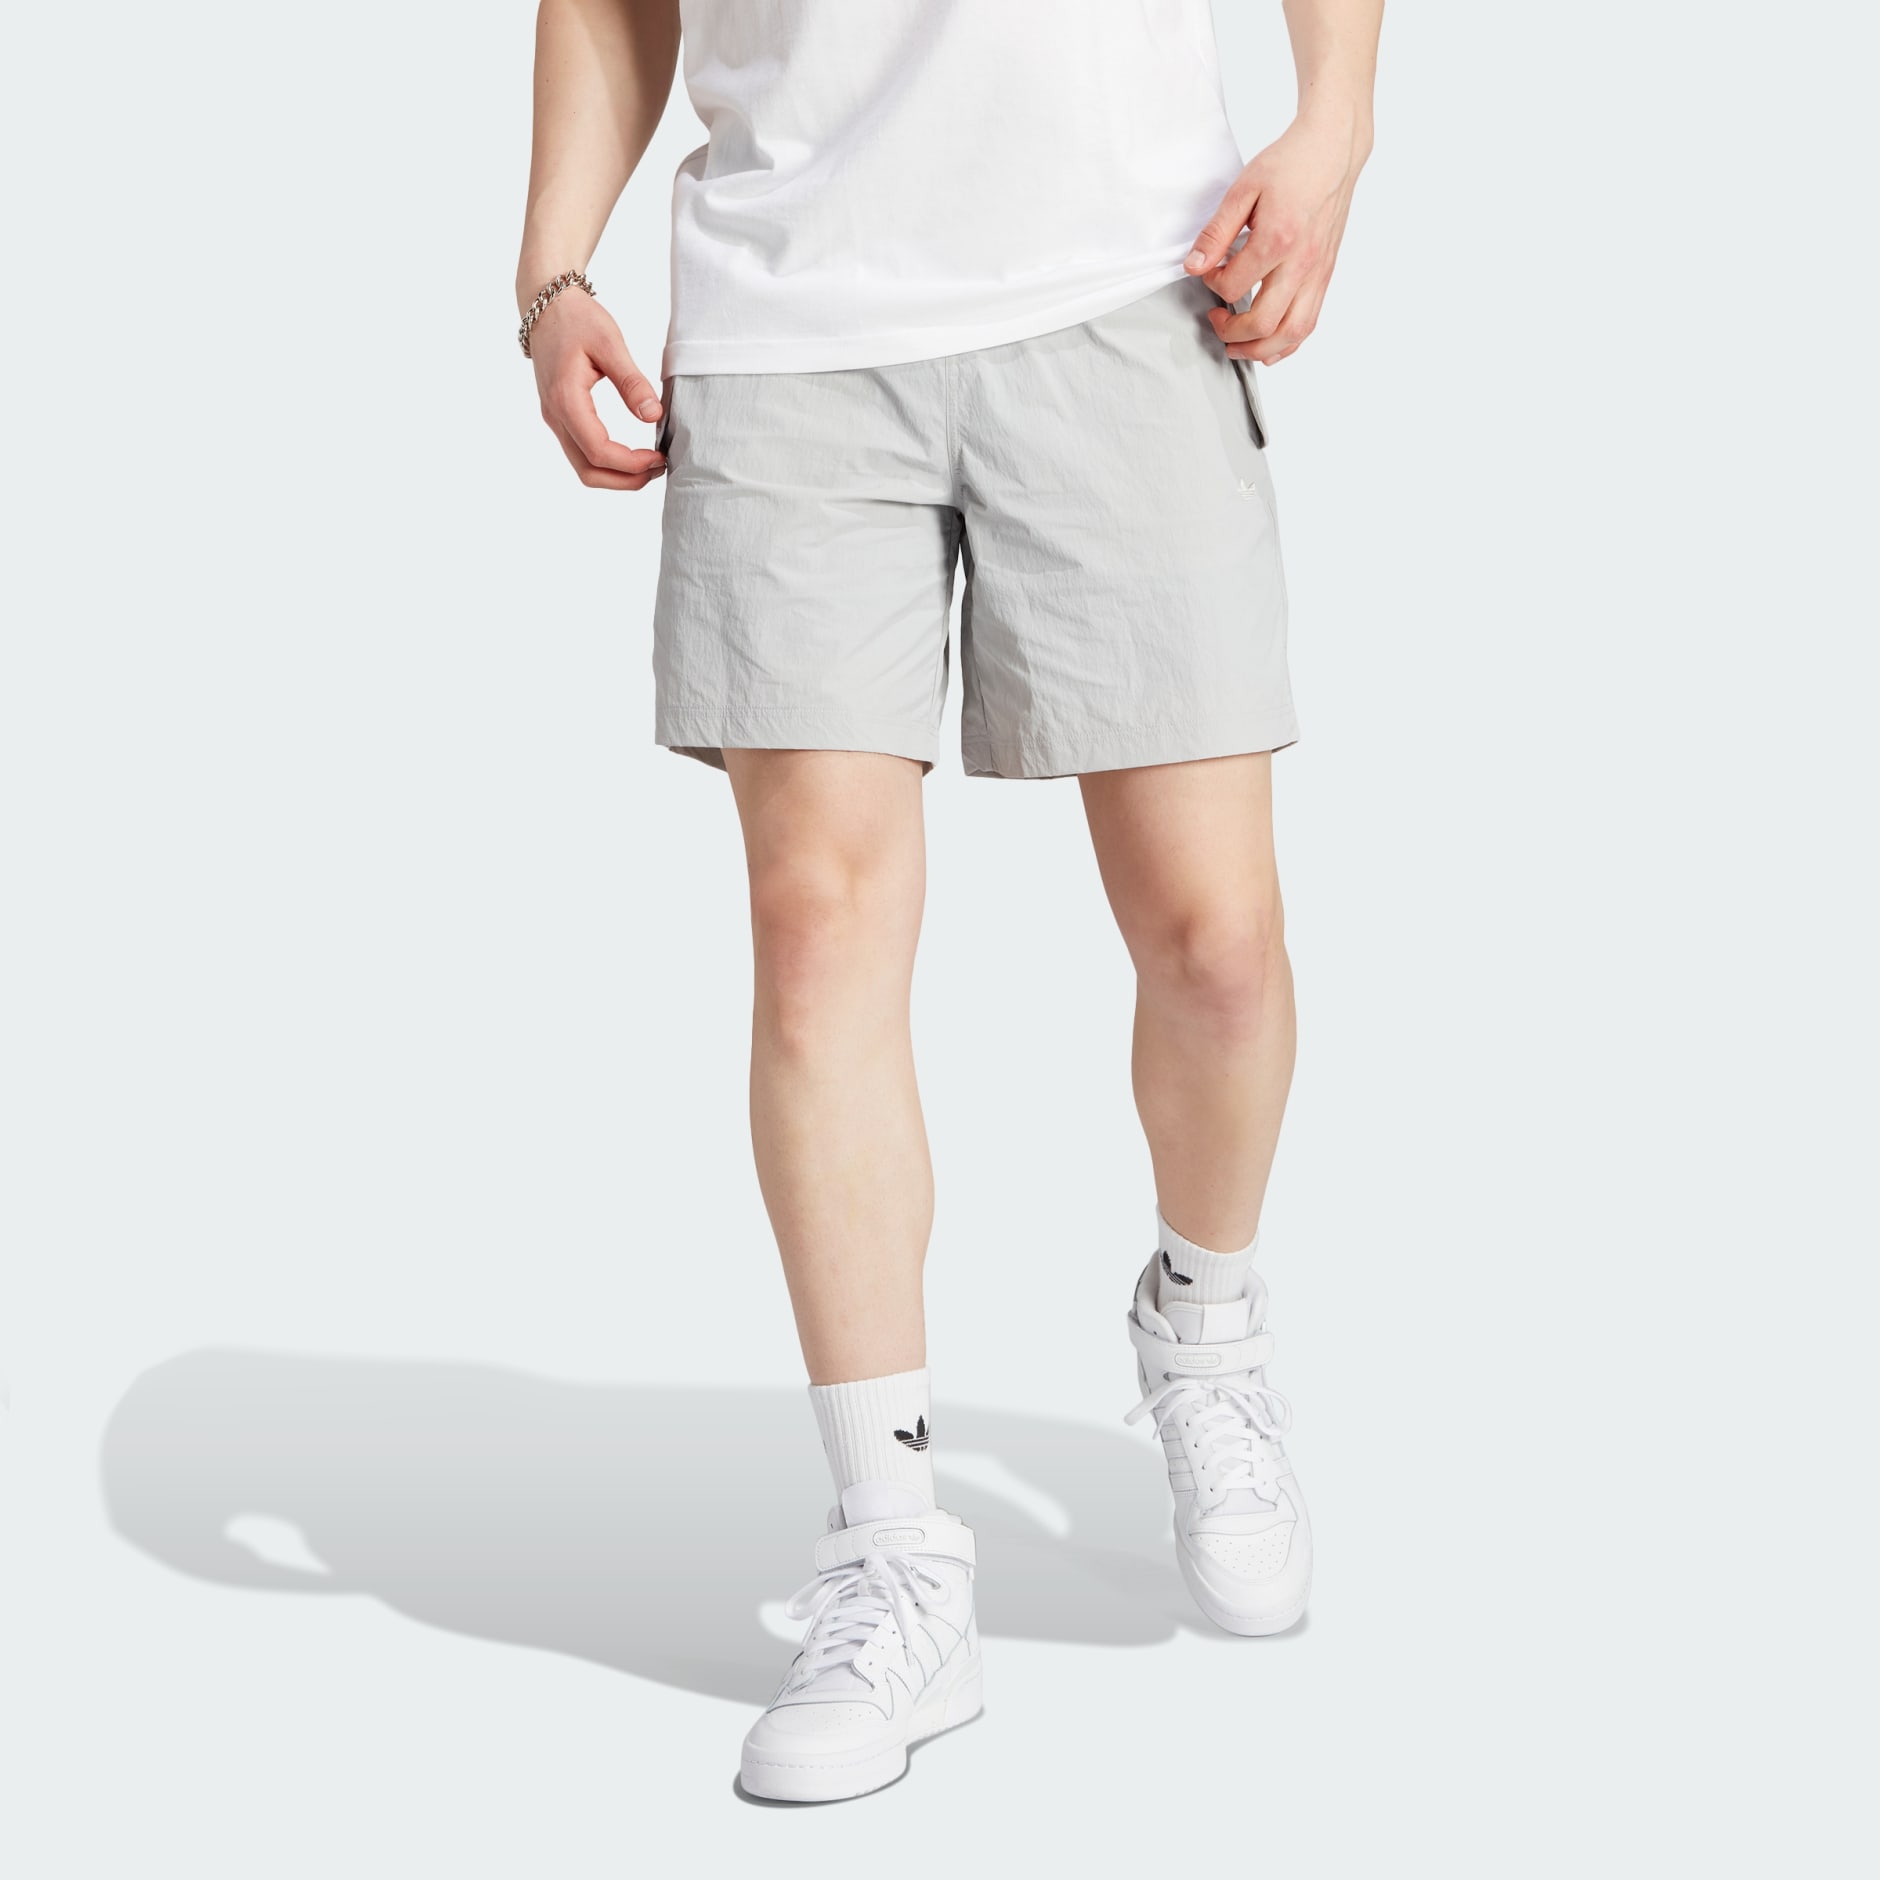 adidas adidas Adventure Cargo Shorts (Gender Neutral) - Grey | adidas UAE